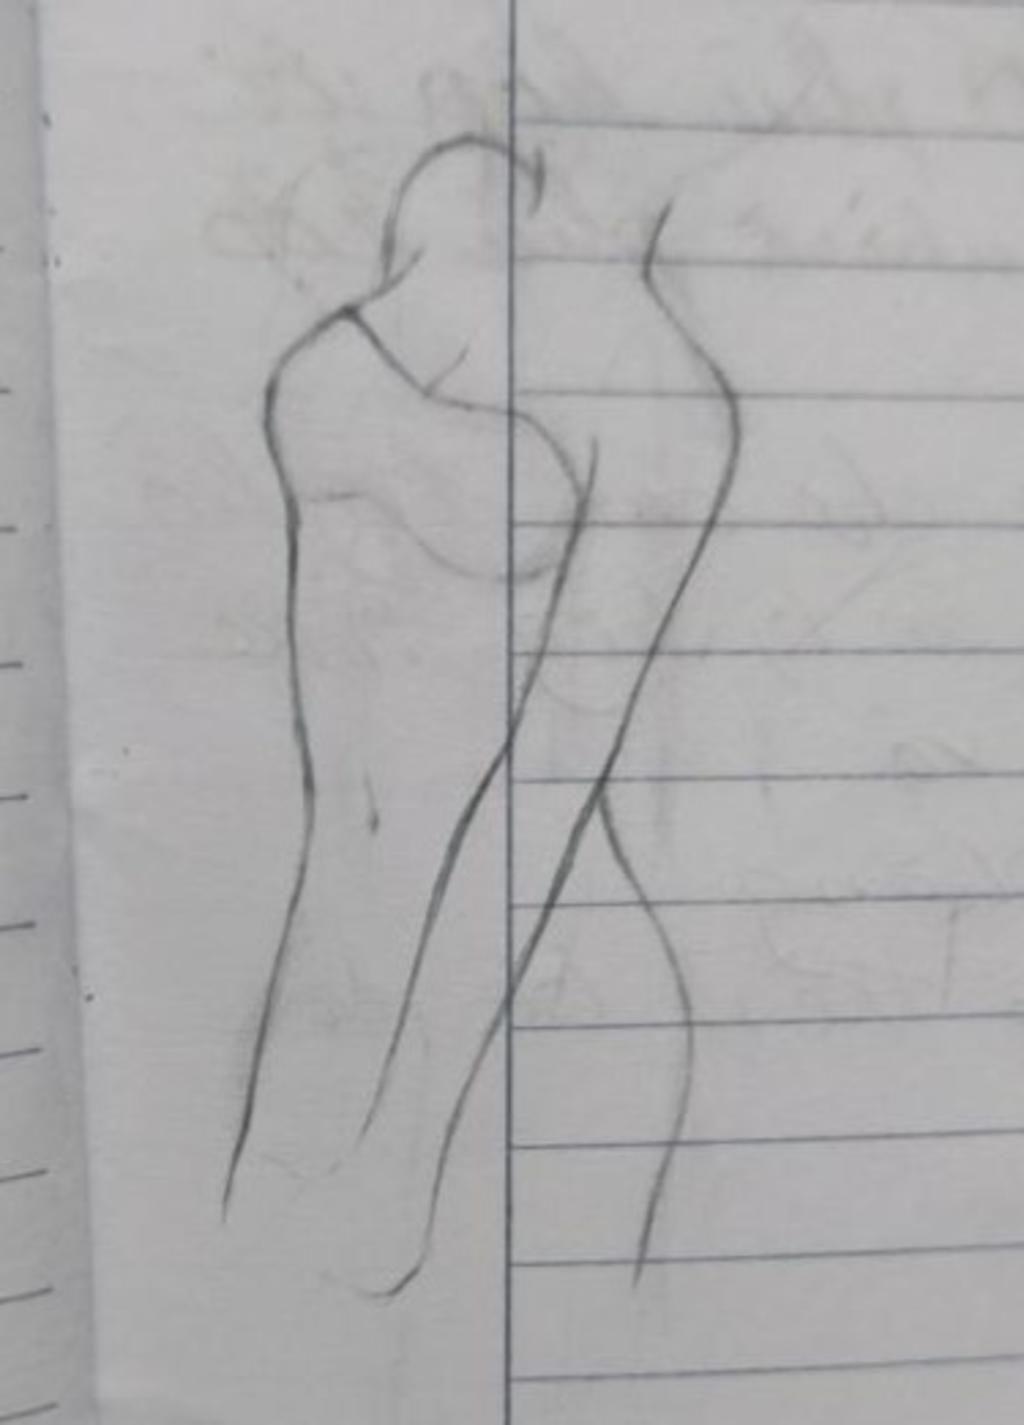 Có thể vẽ xương quai xanh anime bằng bút chì được không?